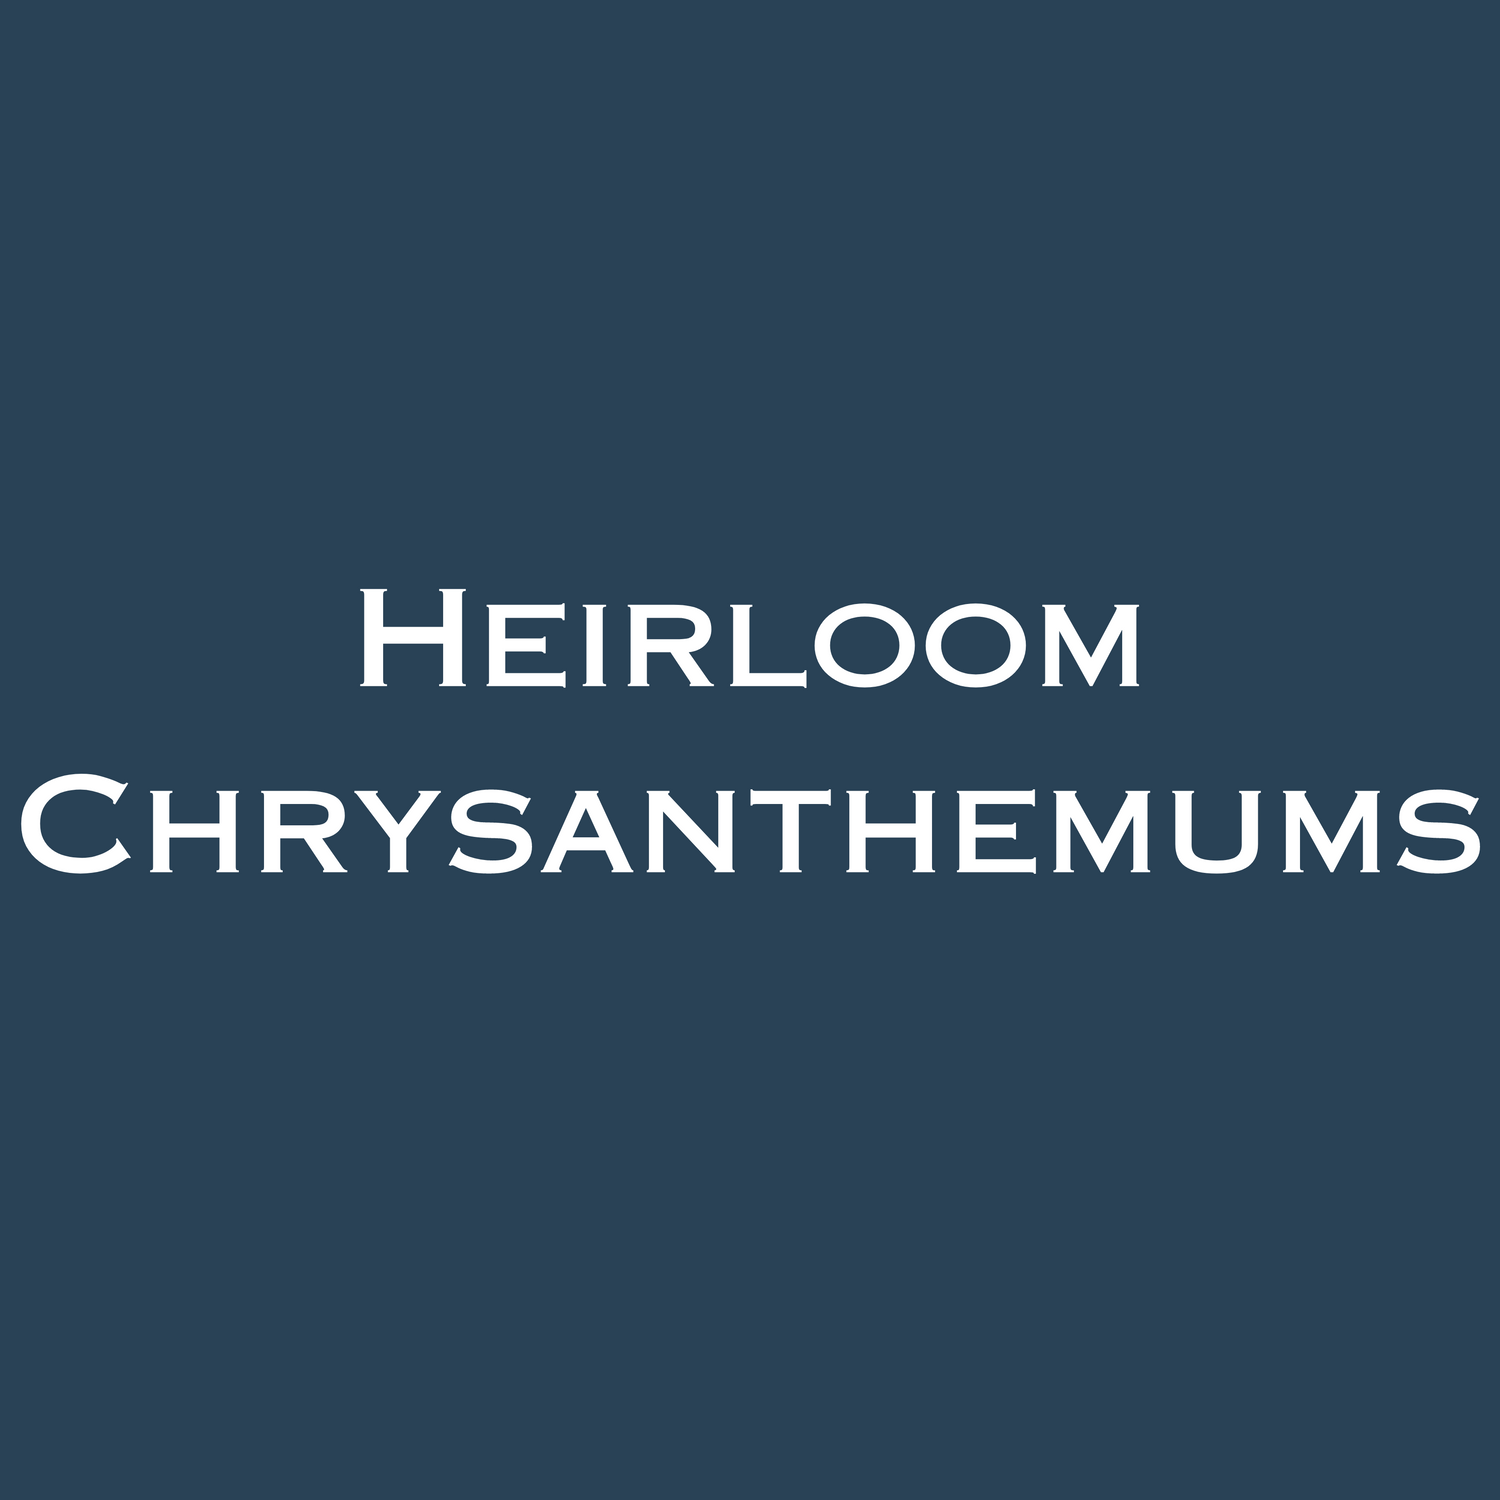 Heirloom Chrysanthemums